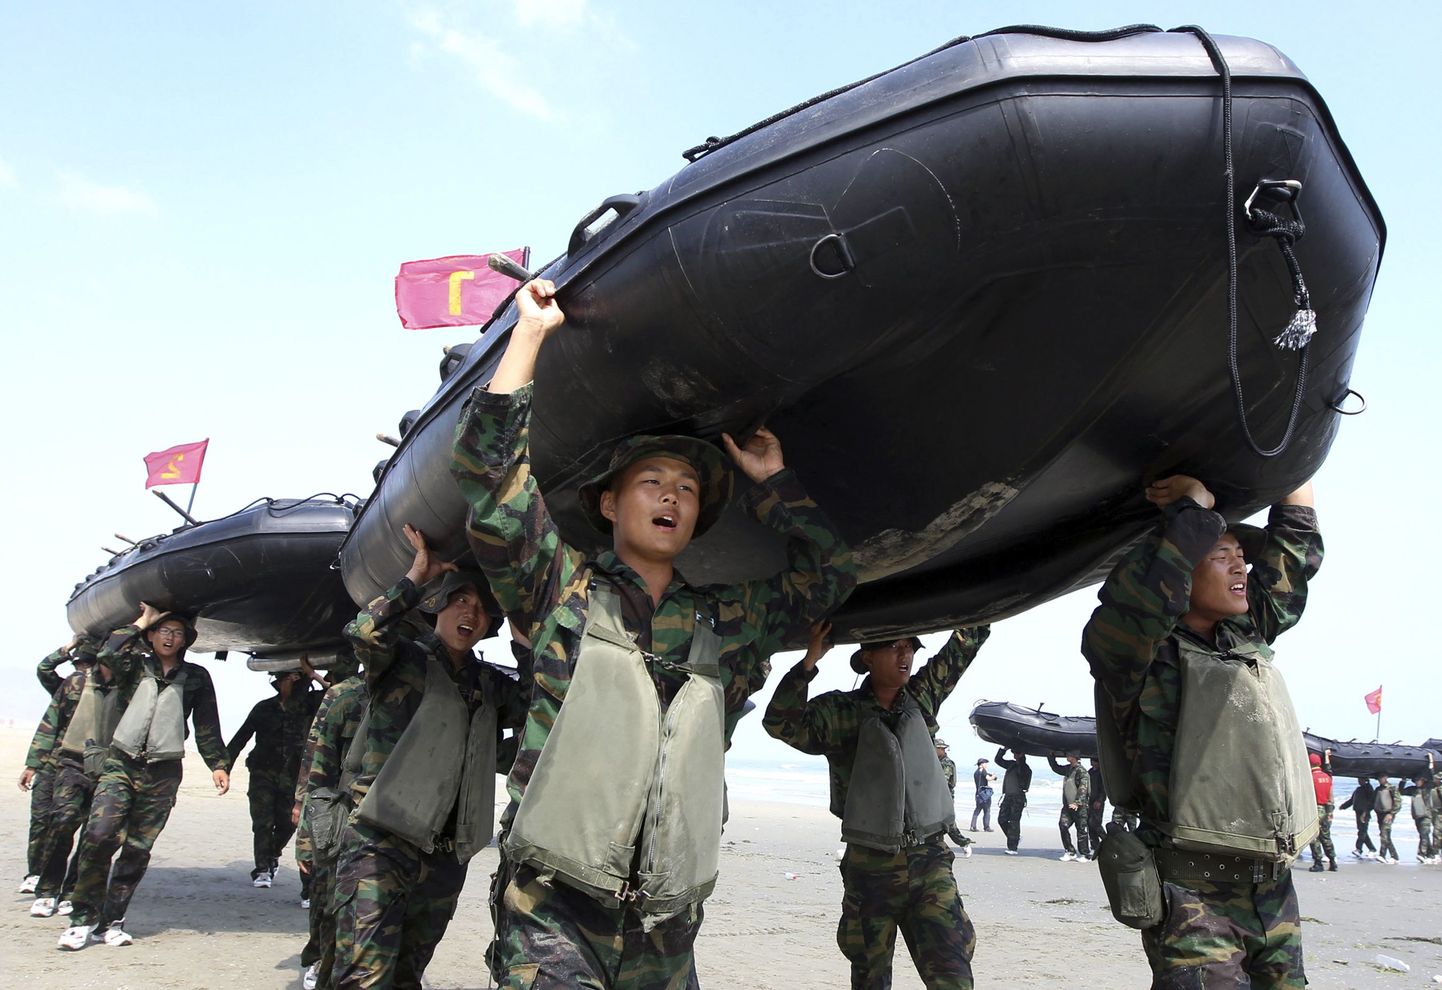 Lõuna-Korea sõdurid tassivad Baengnyeongdo saarel kummipaate, mis on osa mereväeõppustest.